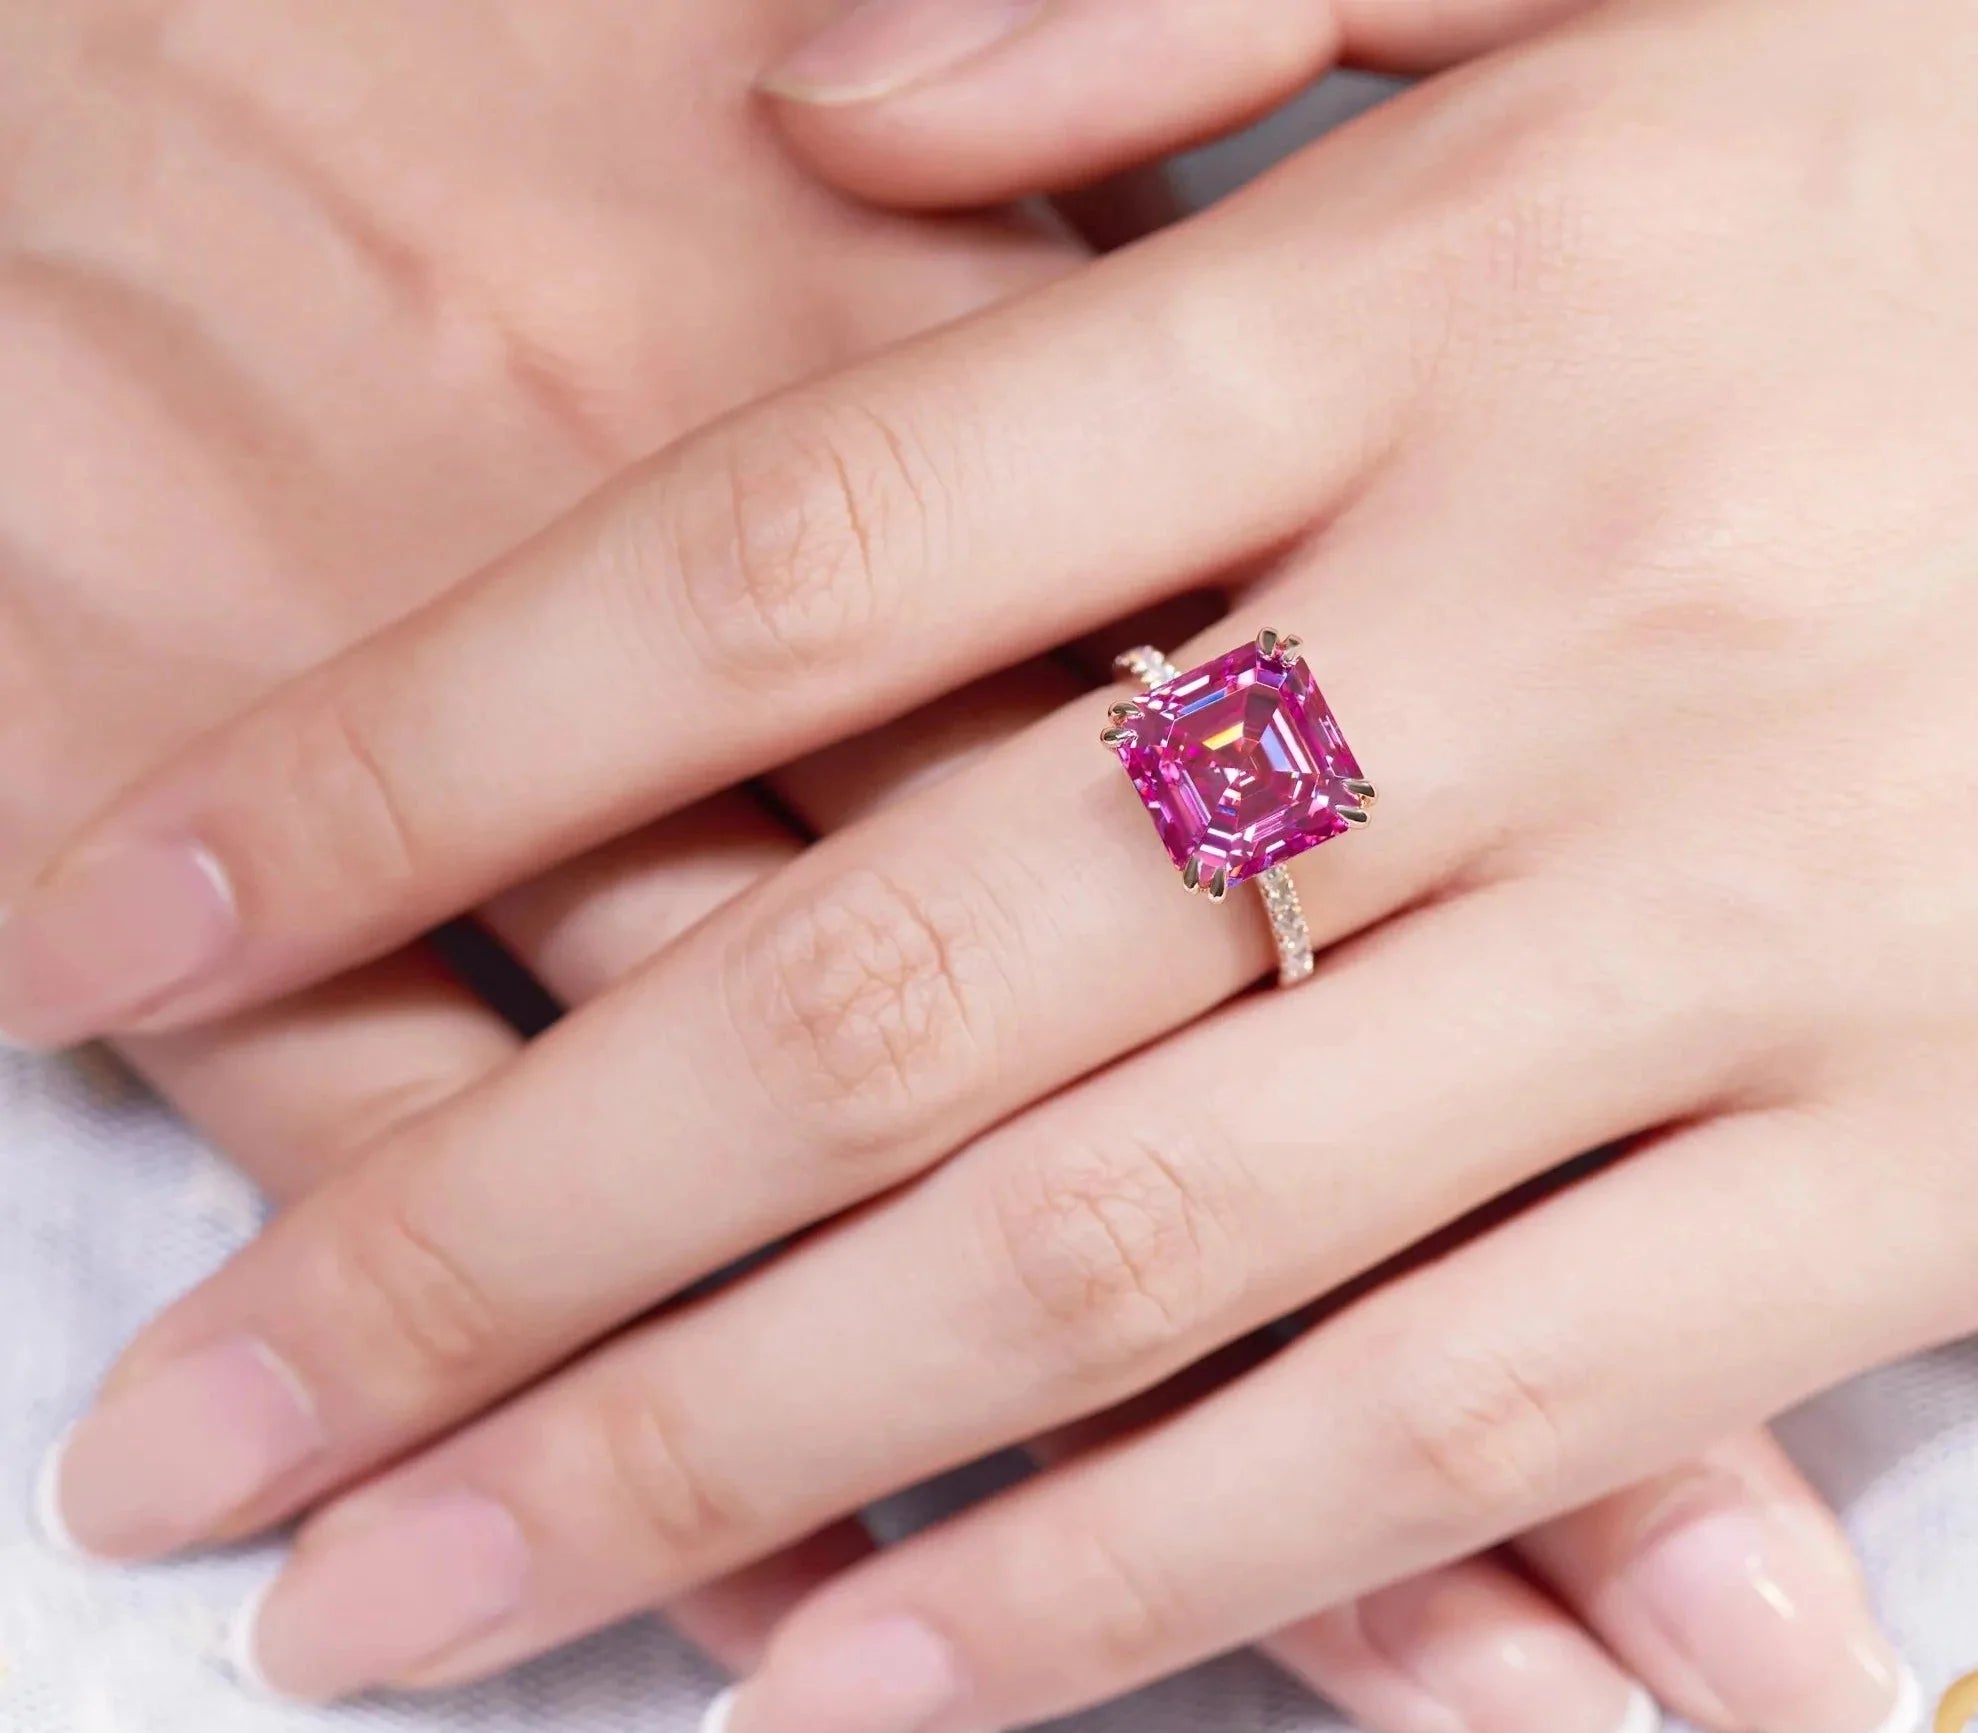 Seven Carat Asscher Cut Fancy Pink Moissanite Pave Solitaire Engagement Ring in 18 Karat Rose Gold - Boutique Pavè